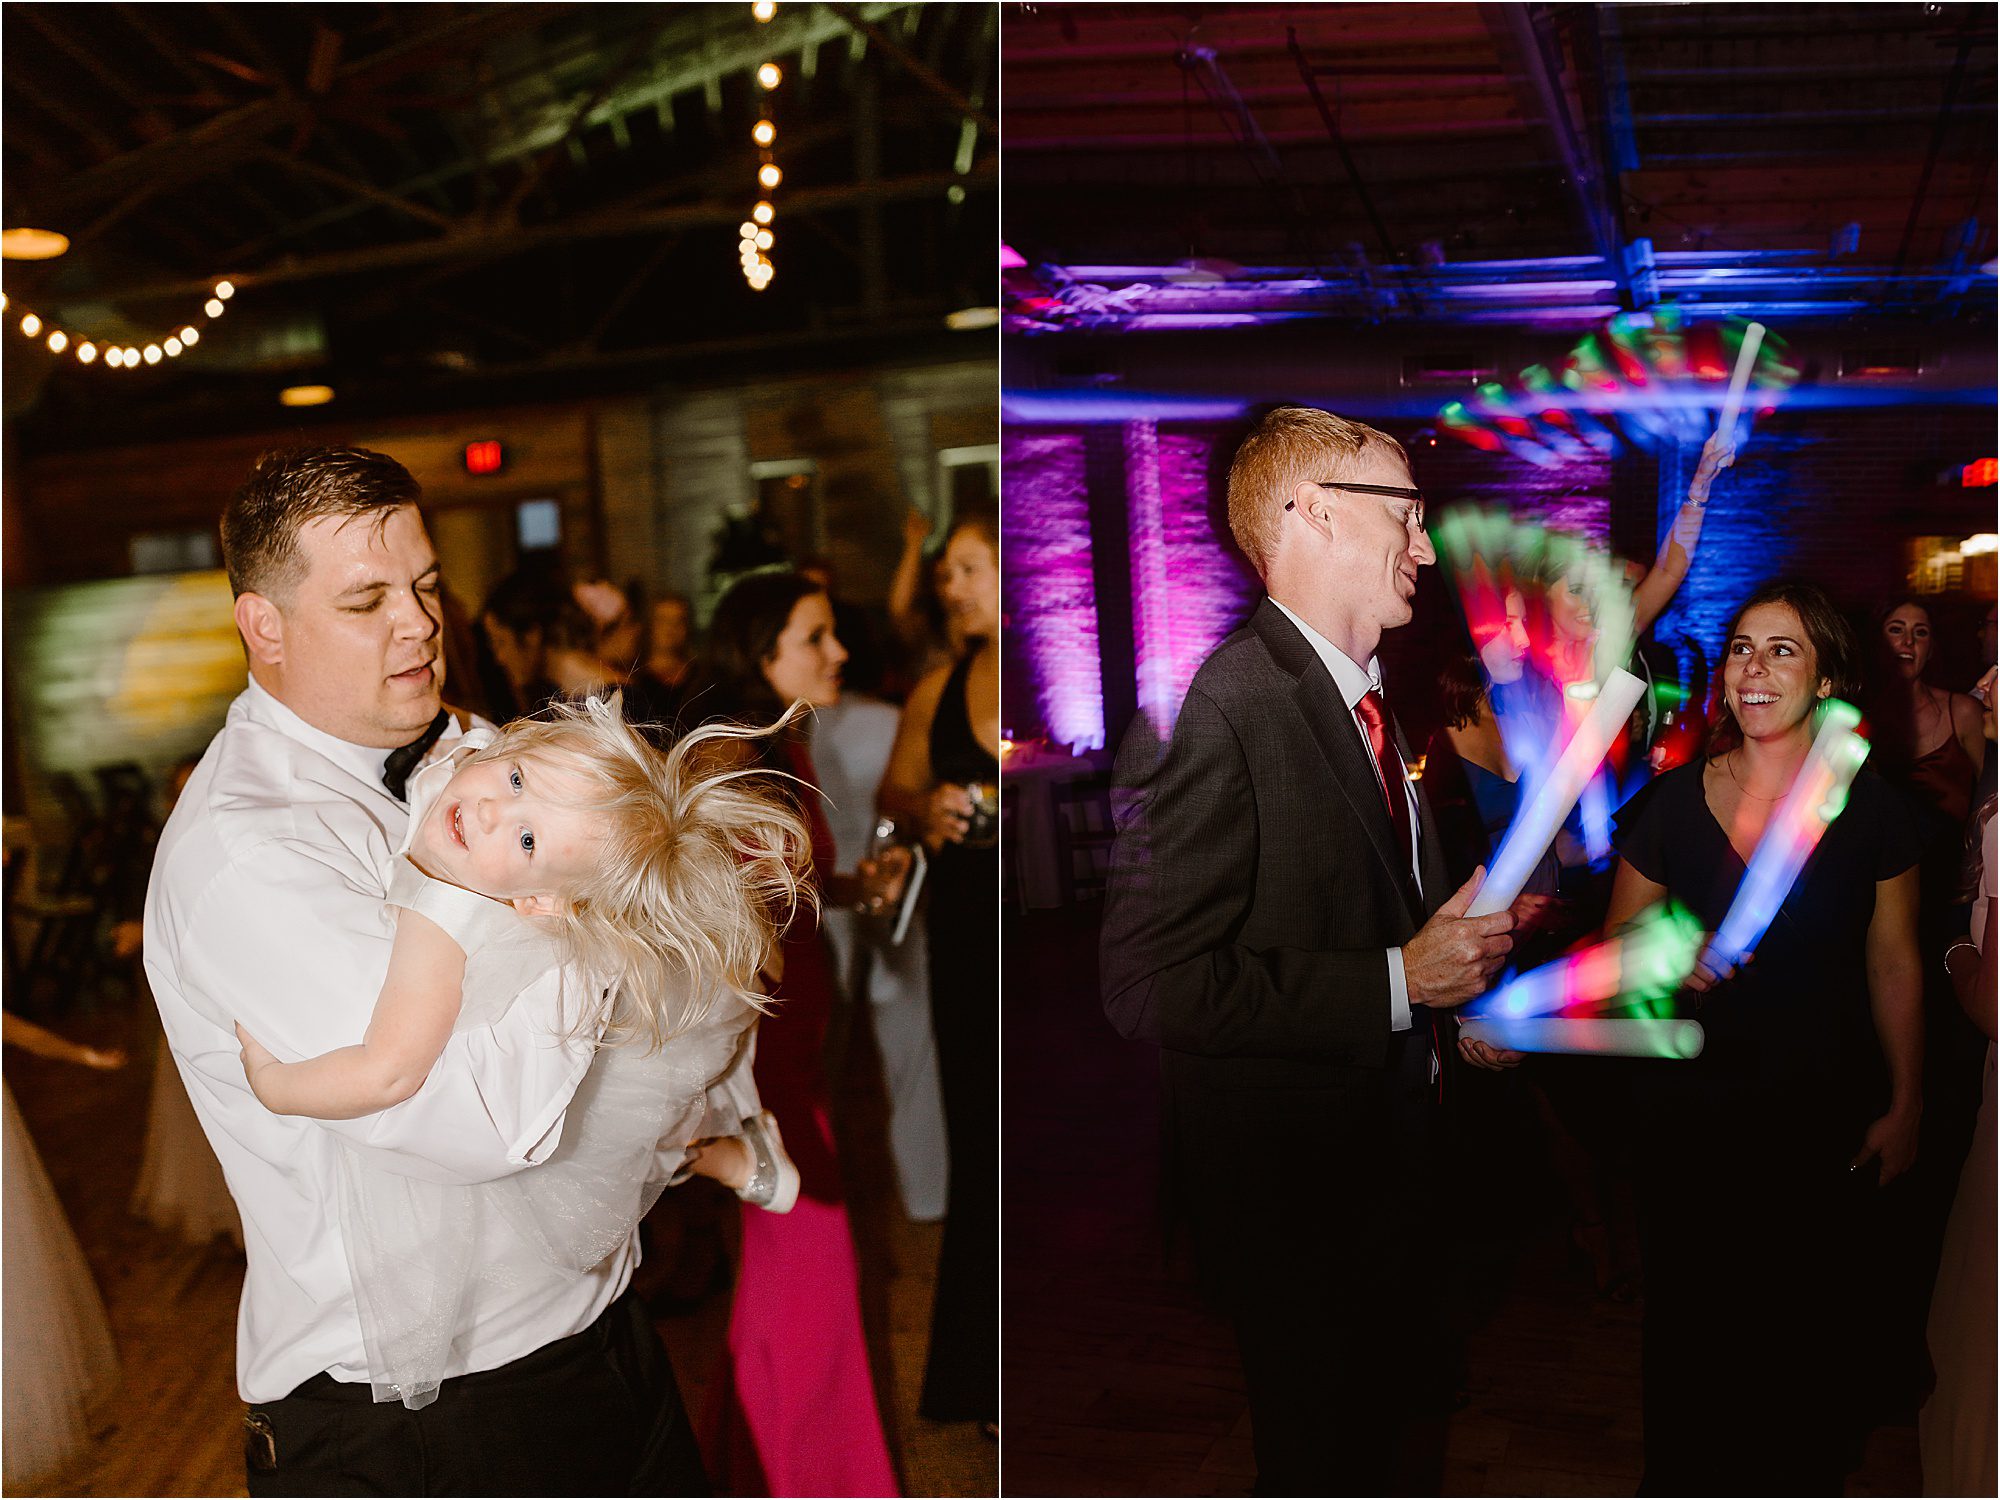 fun dancing and light drag photos at wedding reception